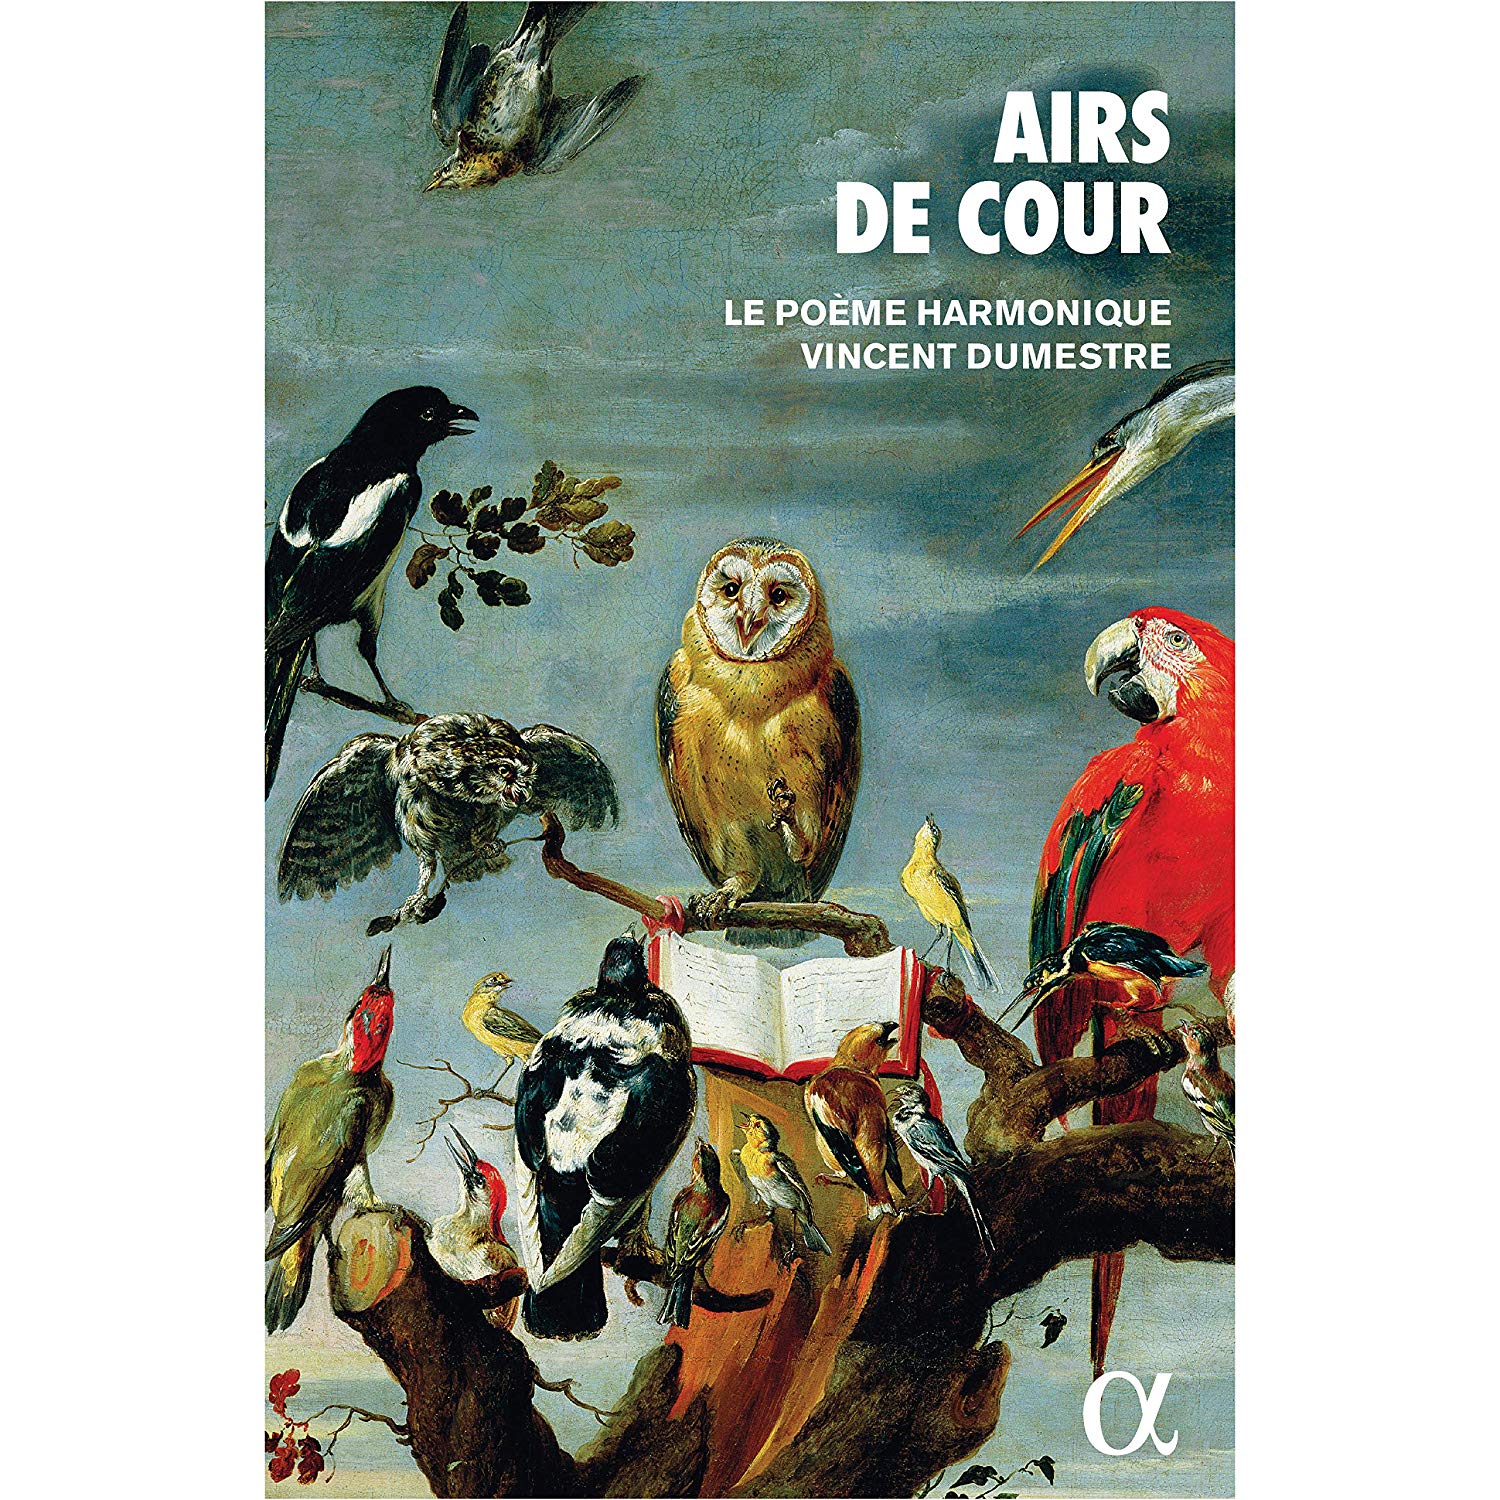 Audio Cd Vincent Dumestre Poeme Harmonique Le - Airs De Cour 2 Cd NUOVO SIGILLATO EDIZIONE DEL SUBITO DISPONIBILE